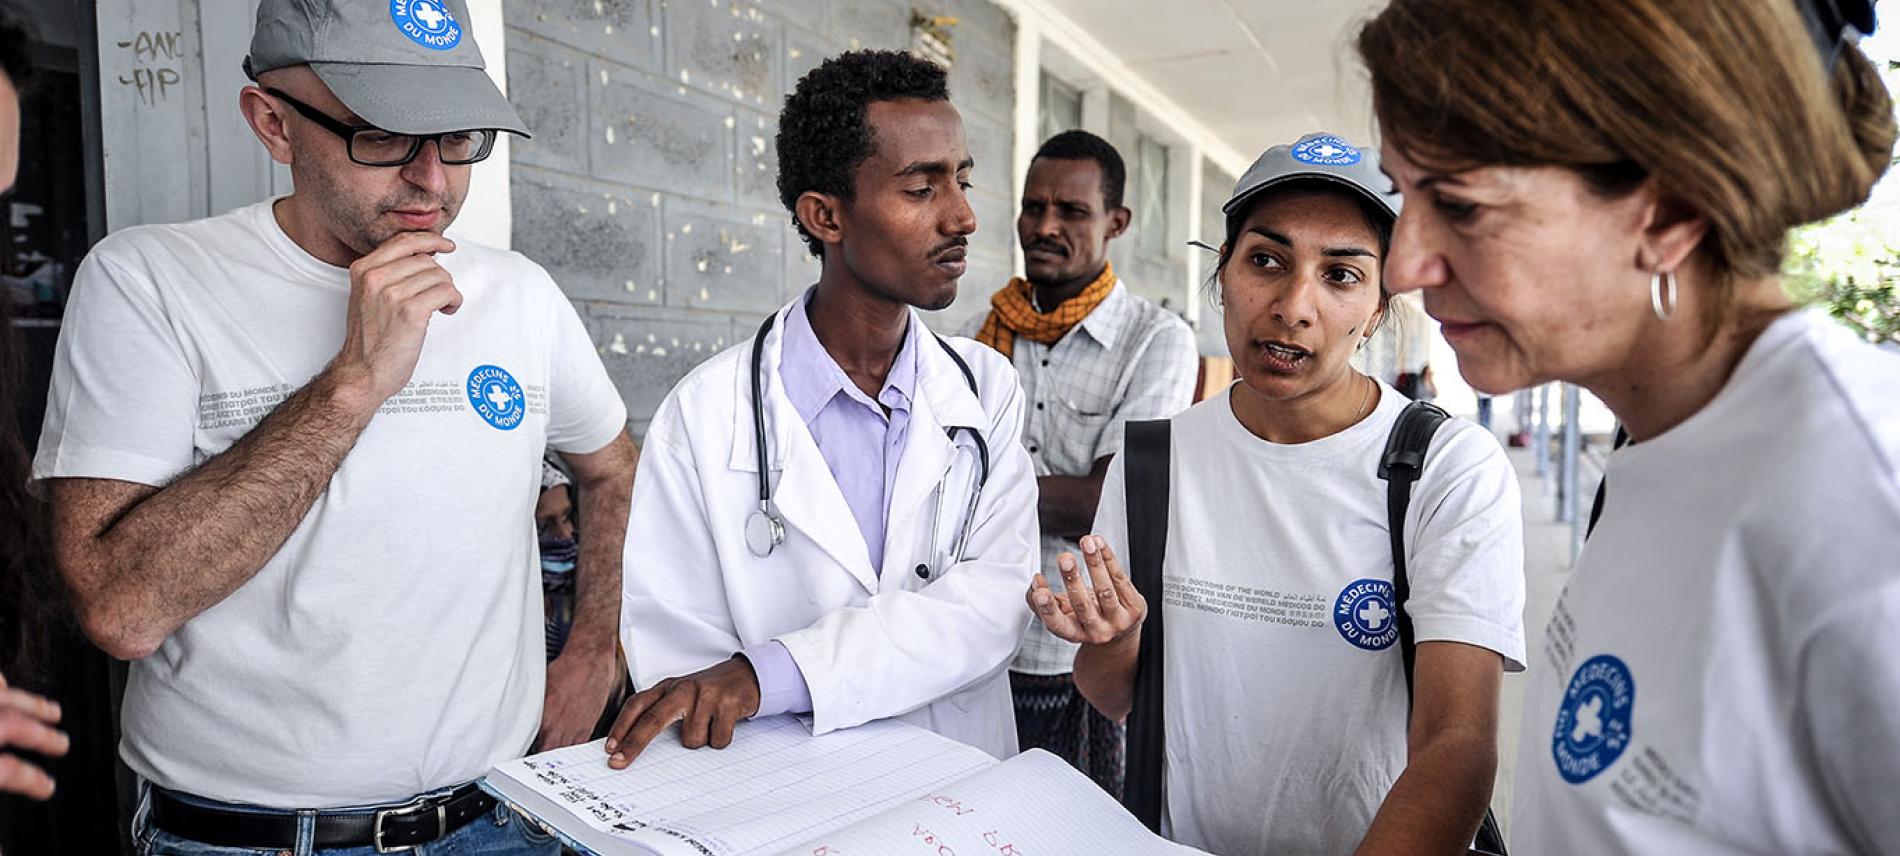 Ärzte der Welt-Mitarbeiter besprechen sich mit dem Personal eines Gesundheitszentrums in Äthiopien. Foto: Quentin Top